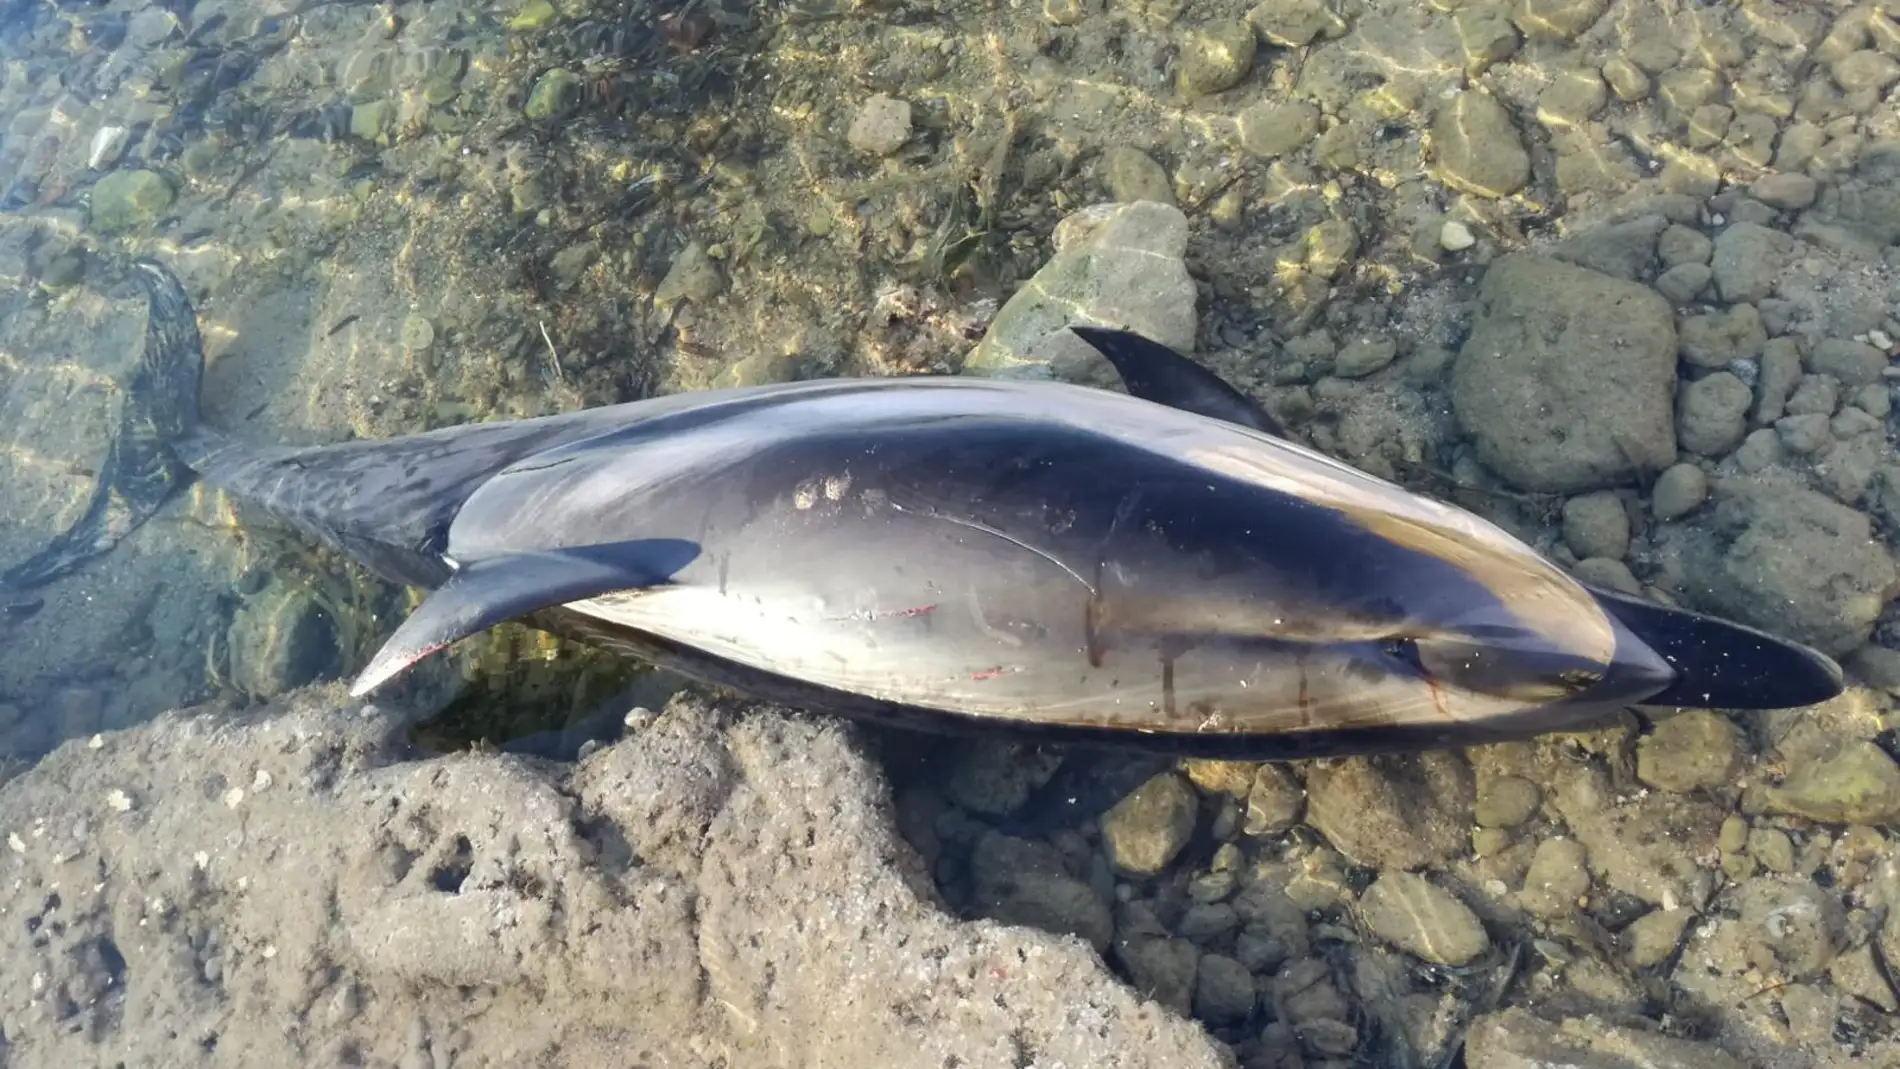 Hallado el cadáver de un delfín listado en la costa torrevejense